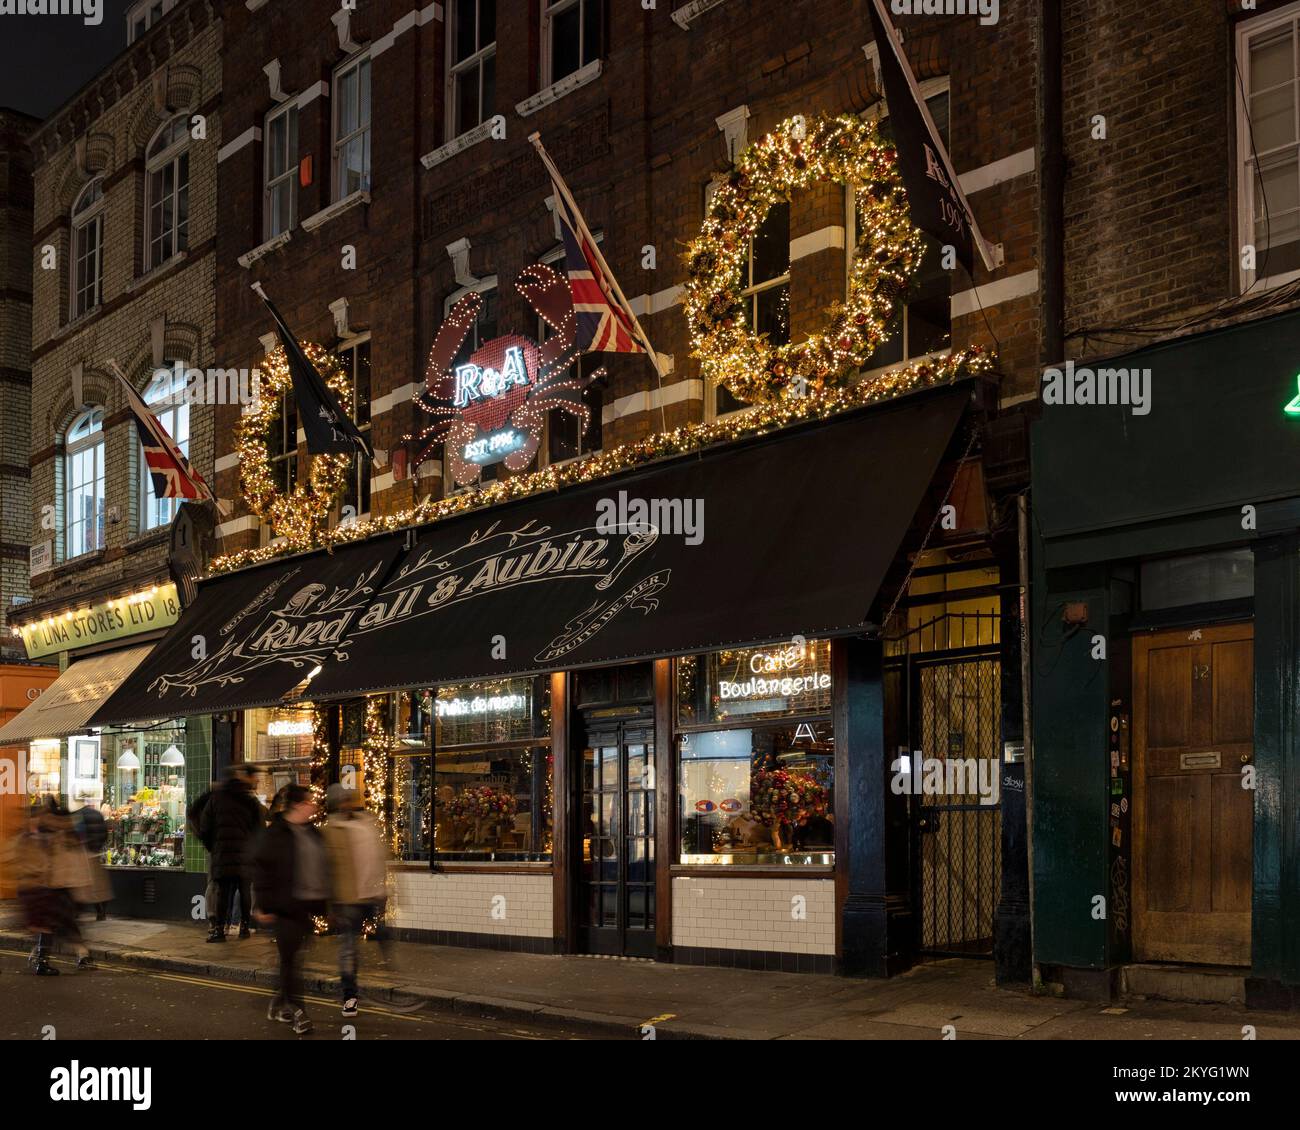 LONDRES, Reino Unido - 19 DE NOVIEMBRE de 2022: Vista exterior del restaurante Randall y Aubin iluminado por la noche en Brewer Street, Soho Foto de stock